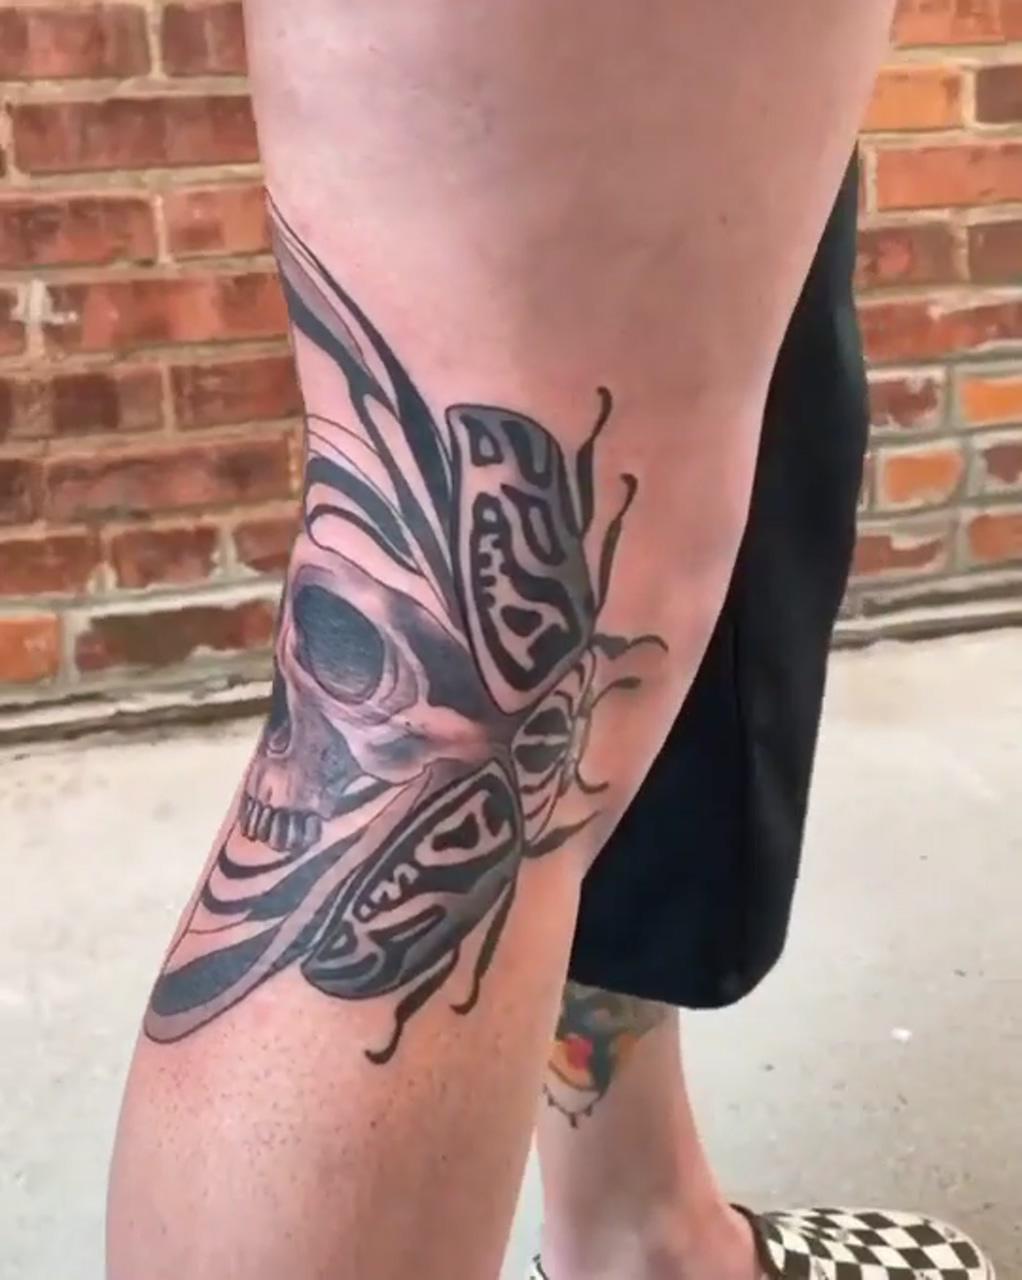 Tattoos videos; acab tattoo